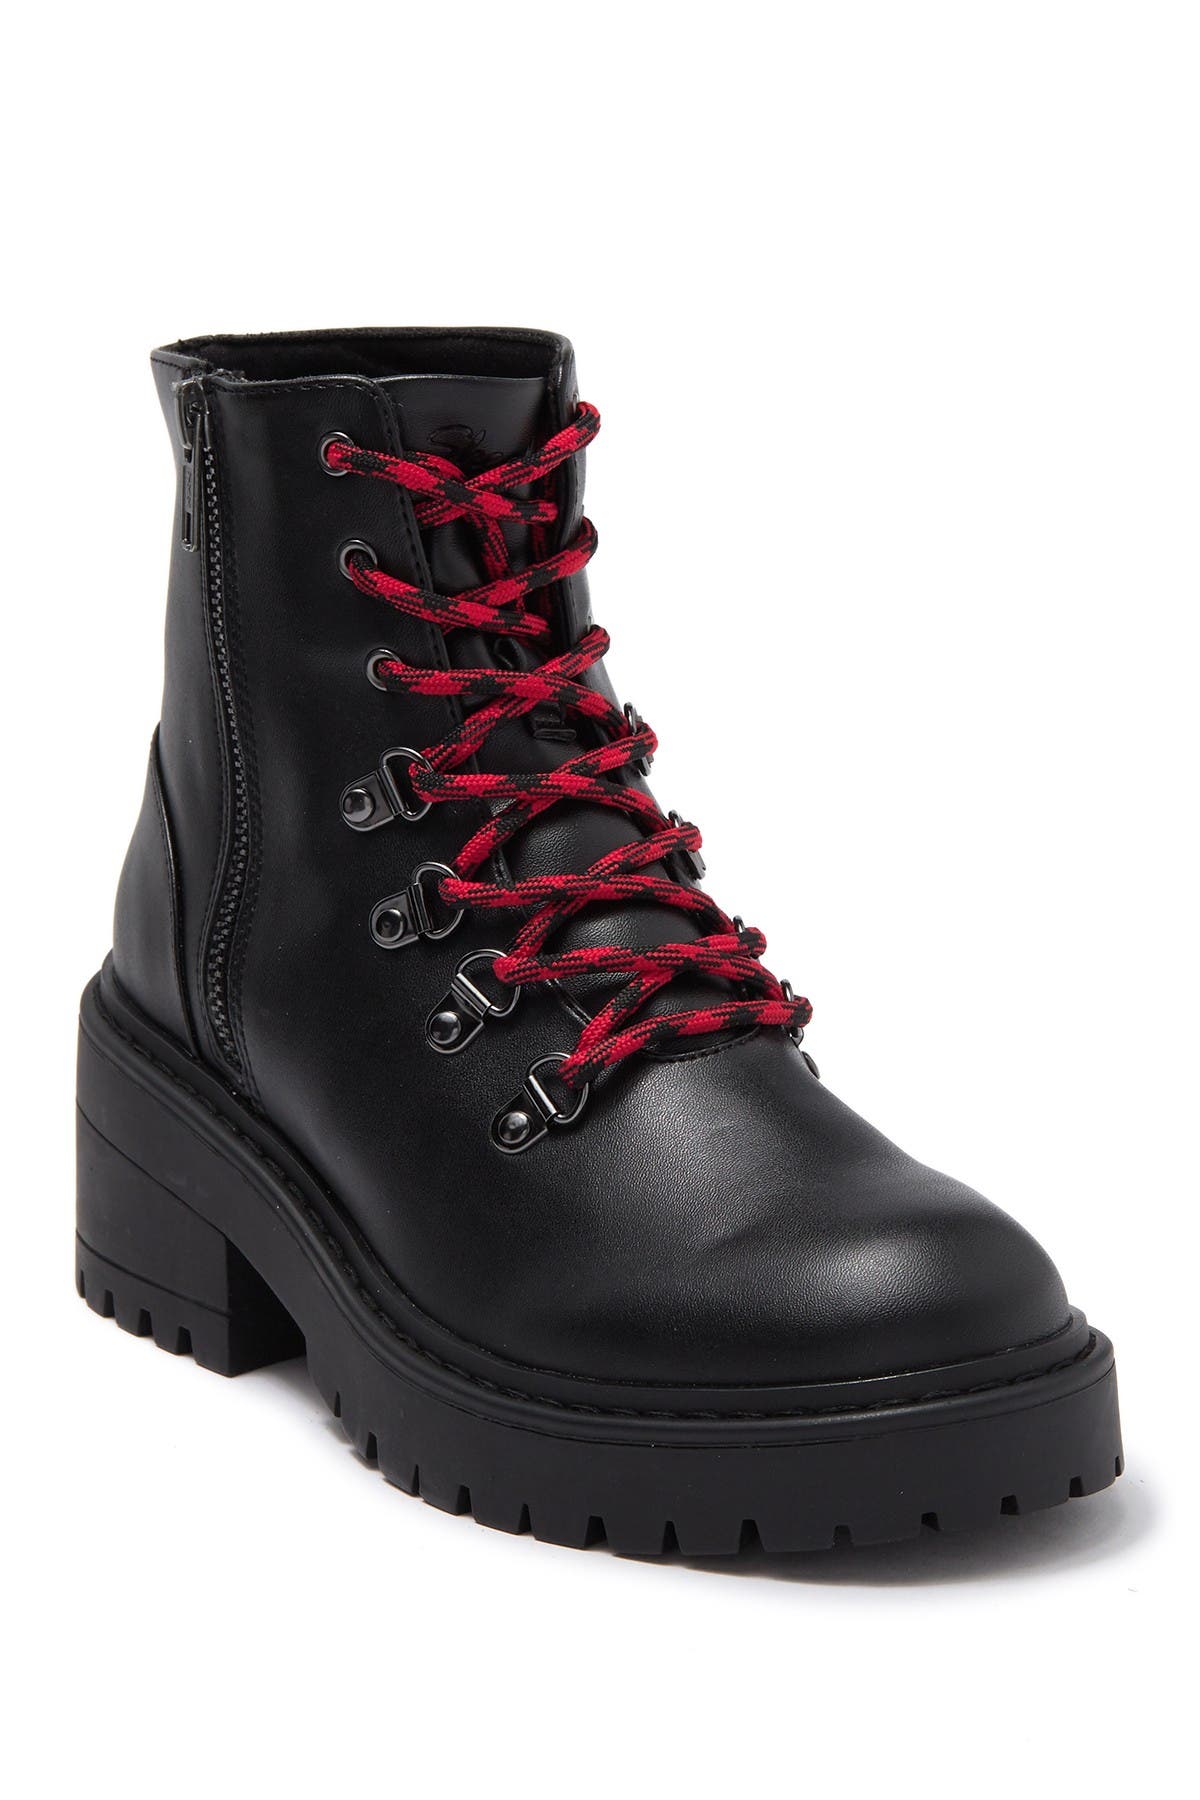 skechers combat boots